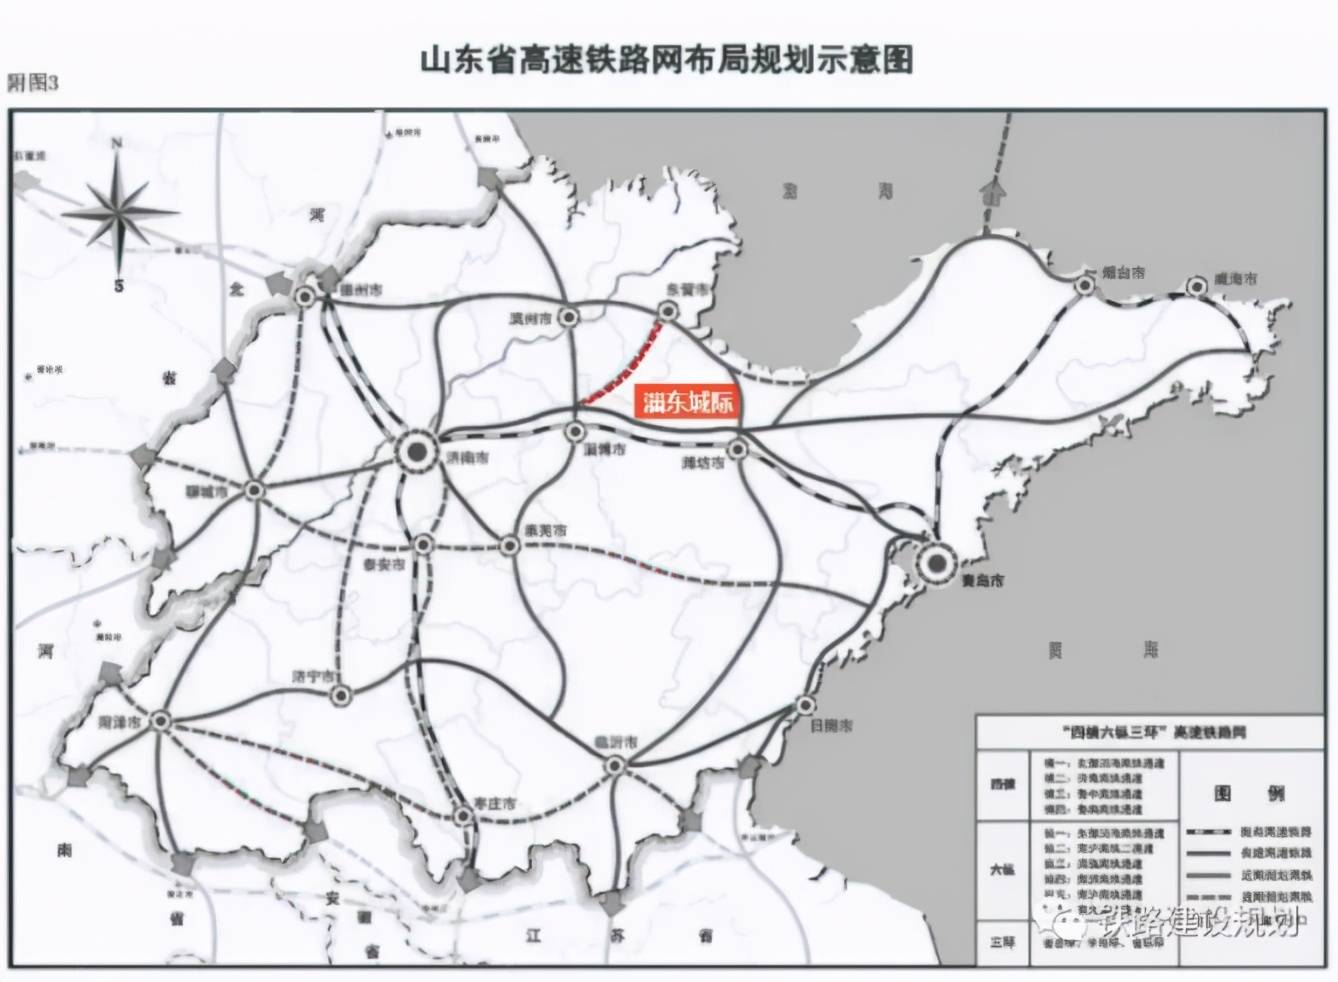 山东京沪二通道津潍高铁,淄东城际铁路争取年内开工建设